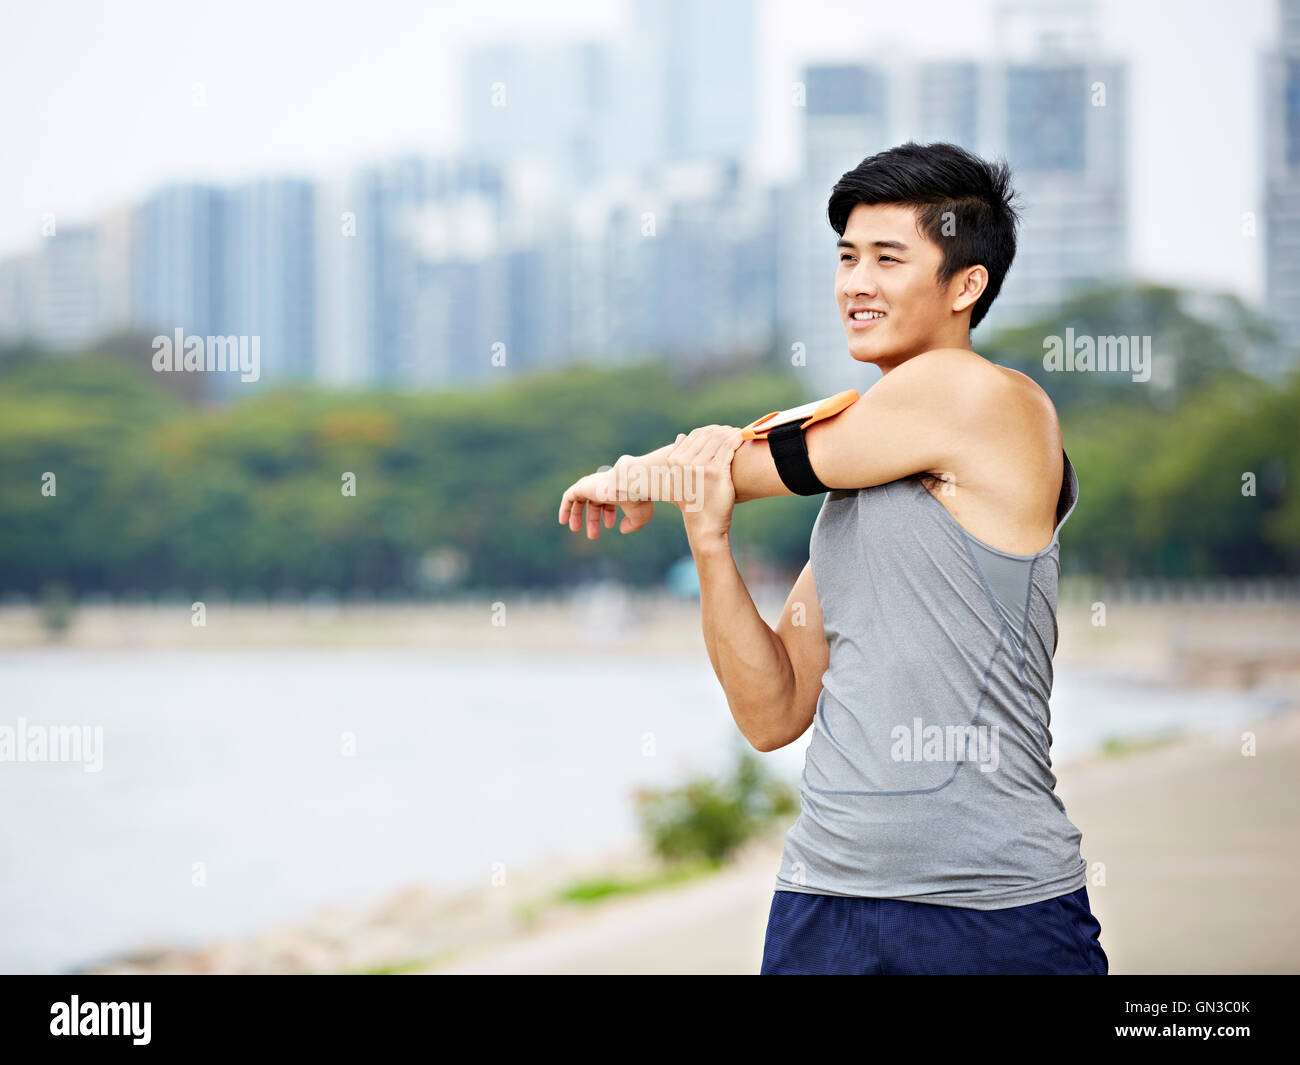 junge asiatische männliche Jogger mit Fitness-Tracker verbunden Erwärmung bis Arm durch Streckung der Arme und Oberkörper vor dem ausführen, Stadt s Stockfoto